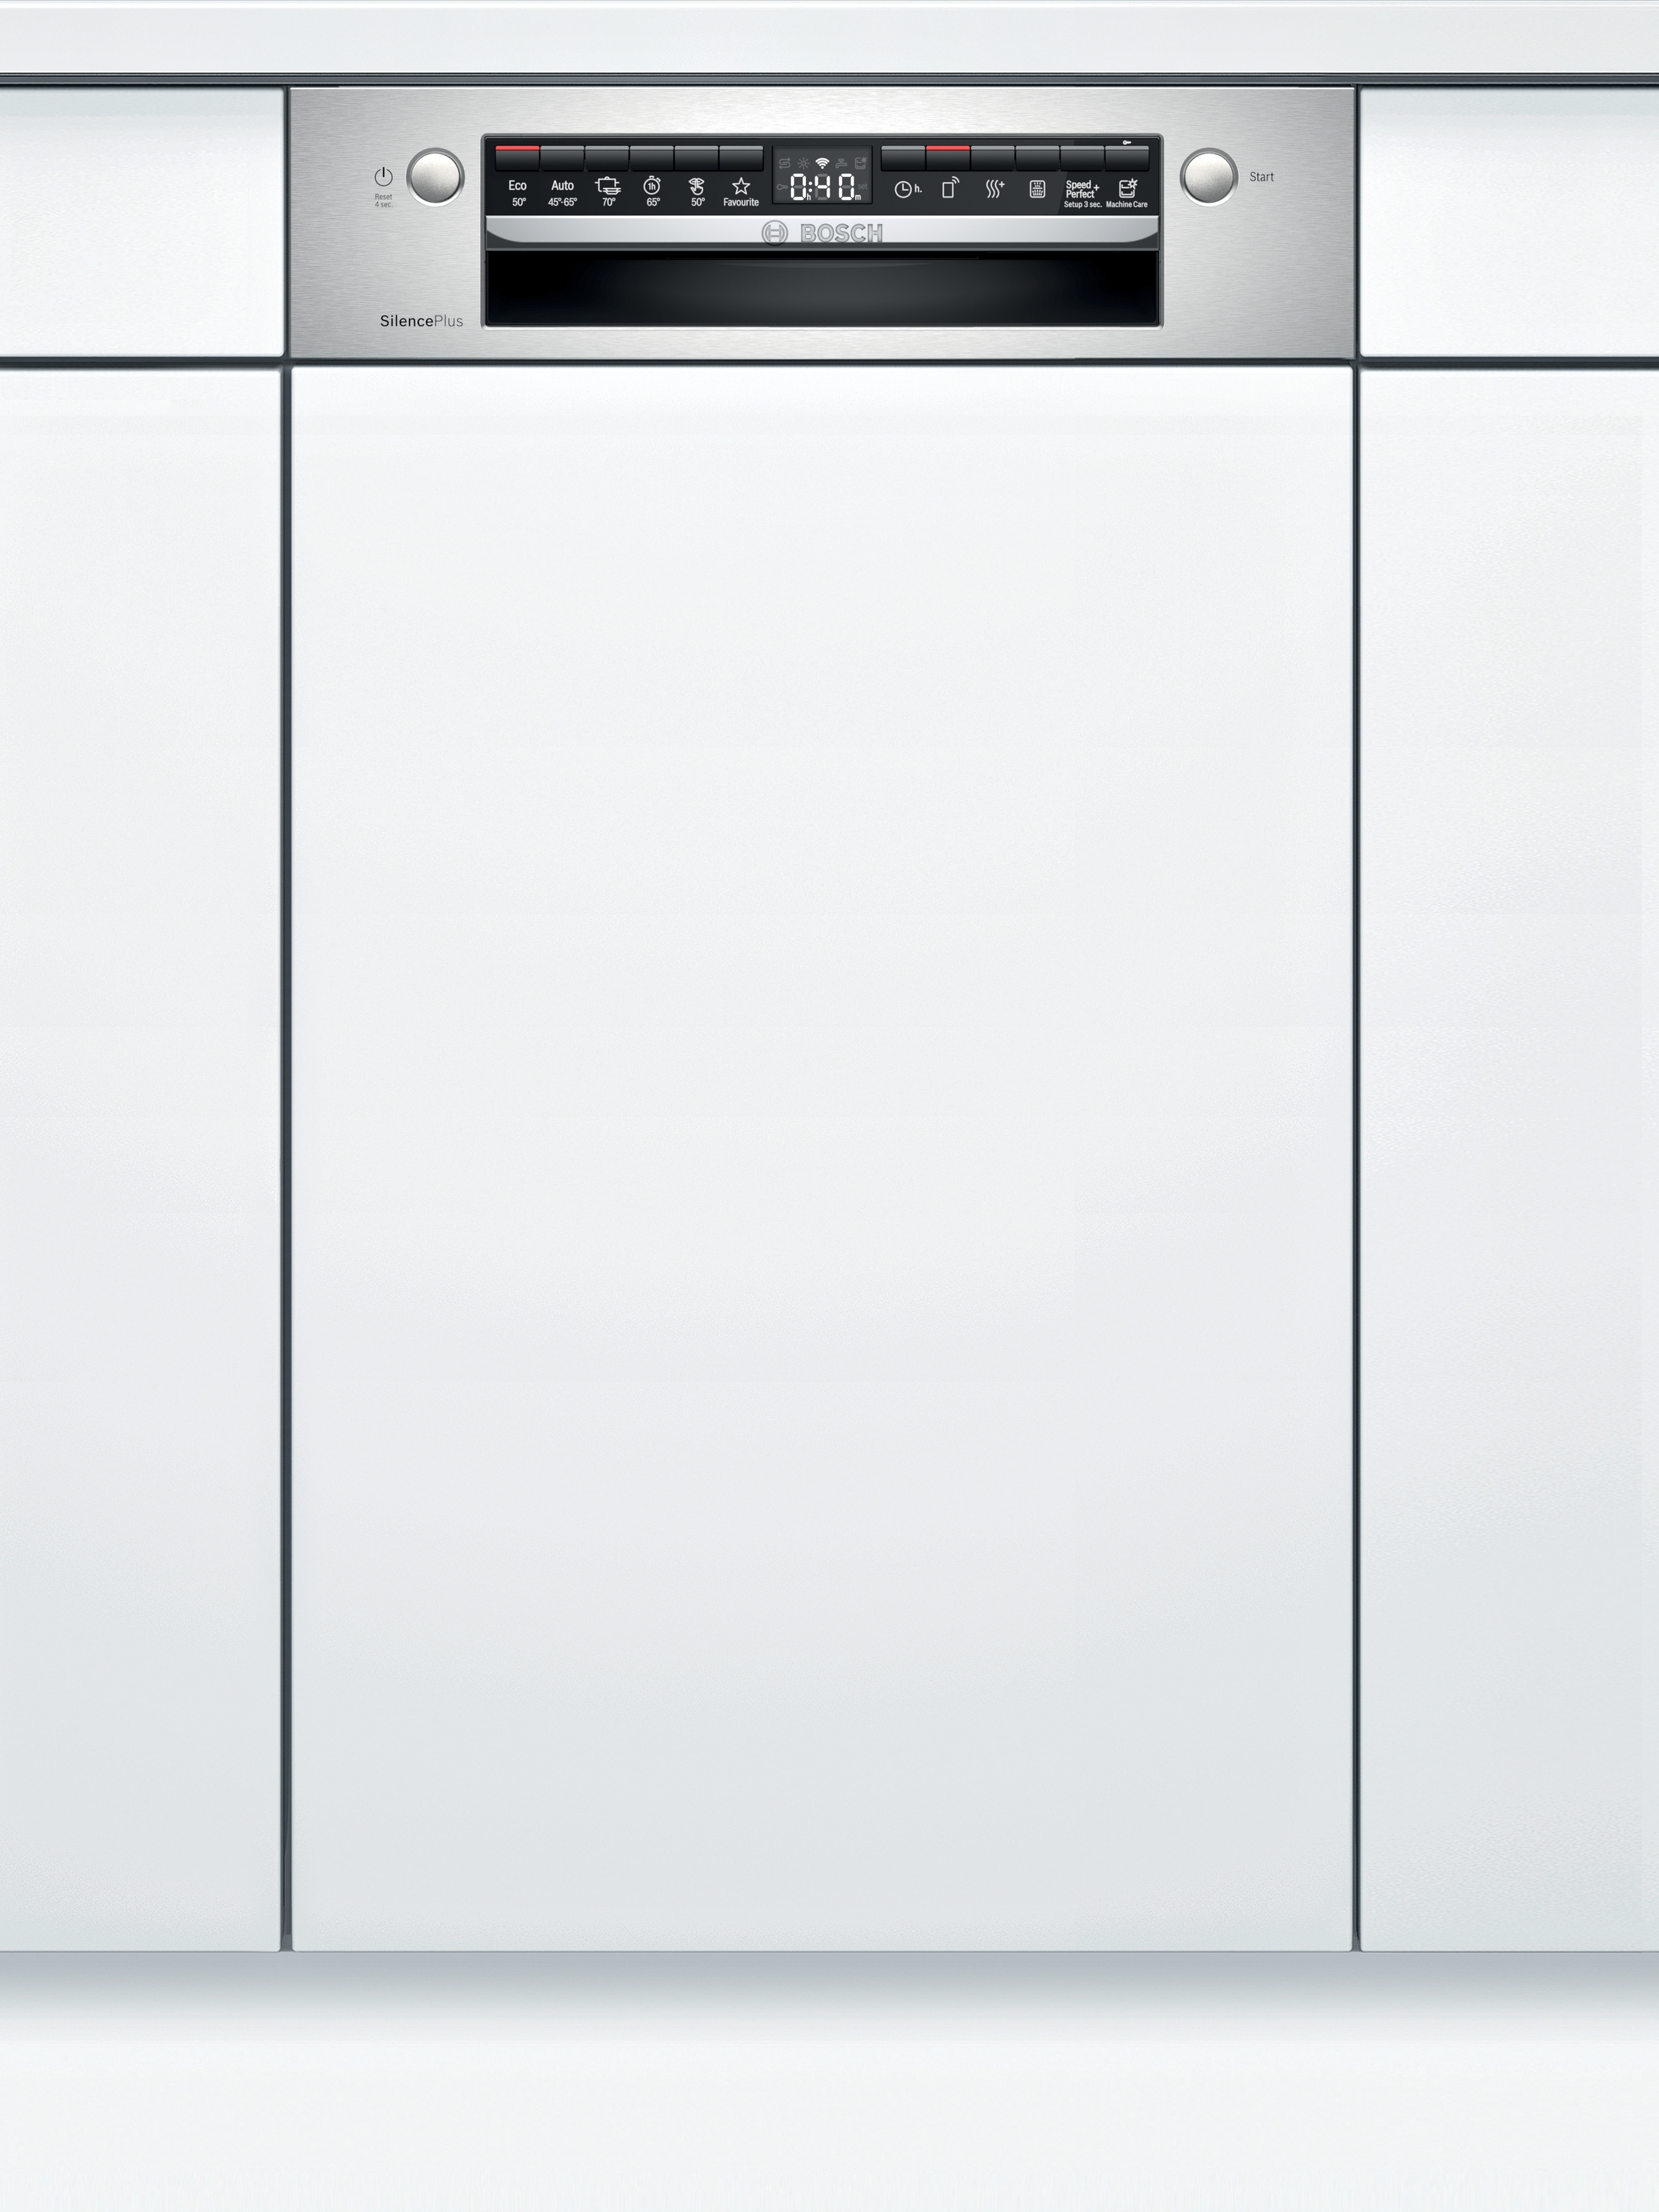 SPI4HMS61E Mașina de spălat vase încorporabilă, 10 seturi, 6 programe, Wi-Fi, 45 cm, 5 ANI GARANTIE,Clasa Energetica E